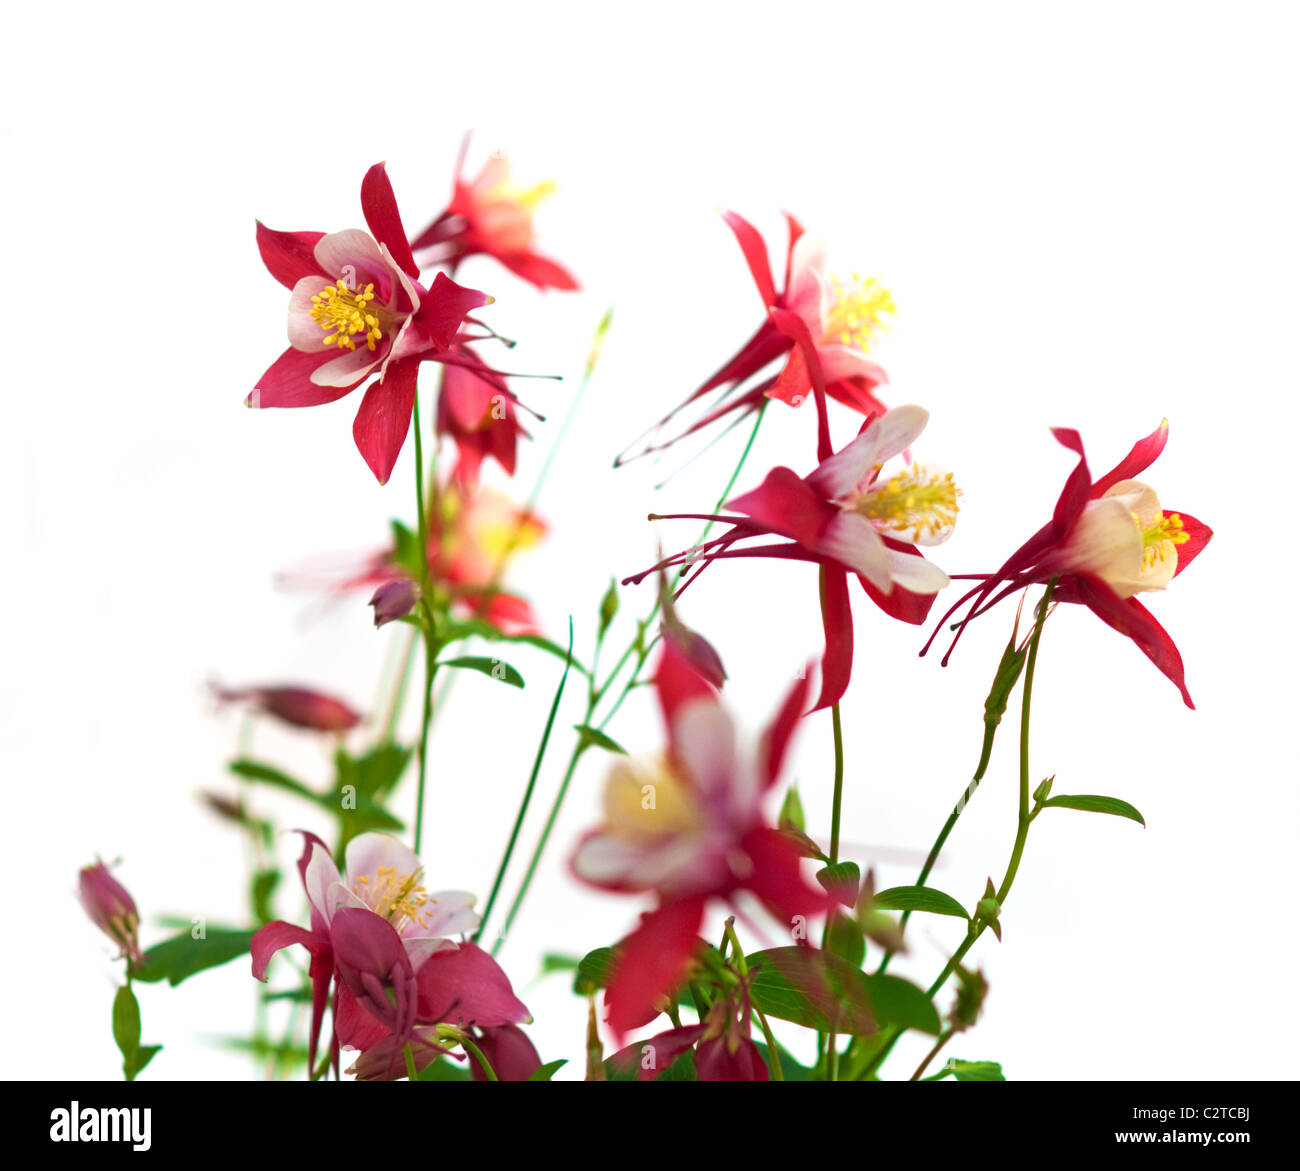 Fleurs roses de aquilegia origami, faible profondeur de champ Banque D'Images